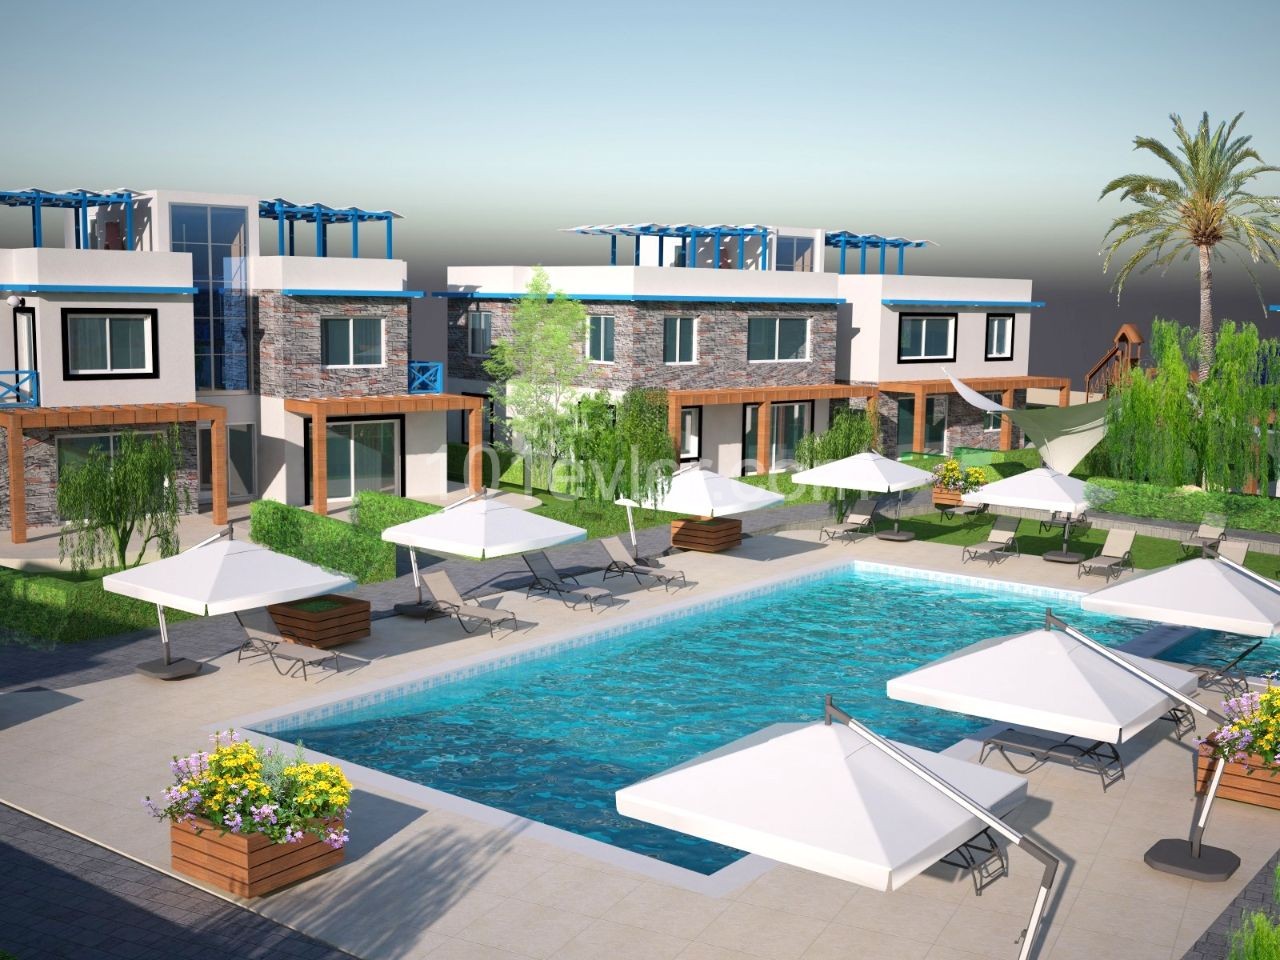 Türkische Eigentumswohnungen in Kyrenia Karsiyaka mit Pool in 300 m Entfernung vom Meer. Erdgeschoss oder Obergeschoss mit Terrasse Optionen.05338403555 ** 